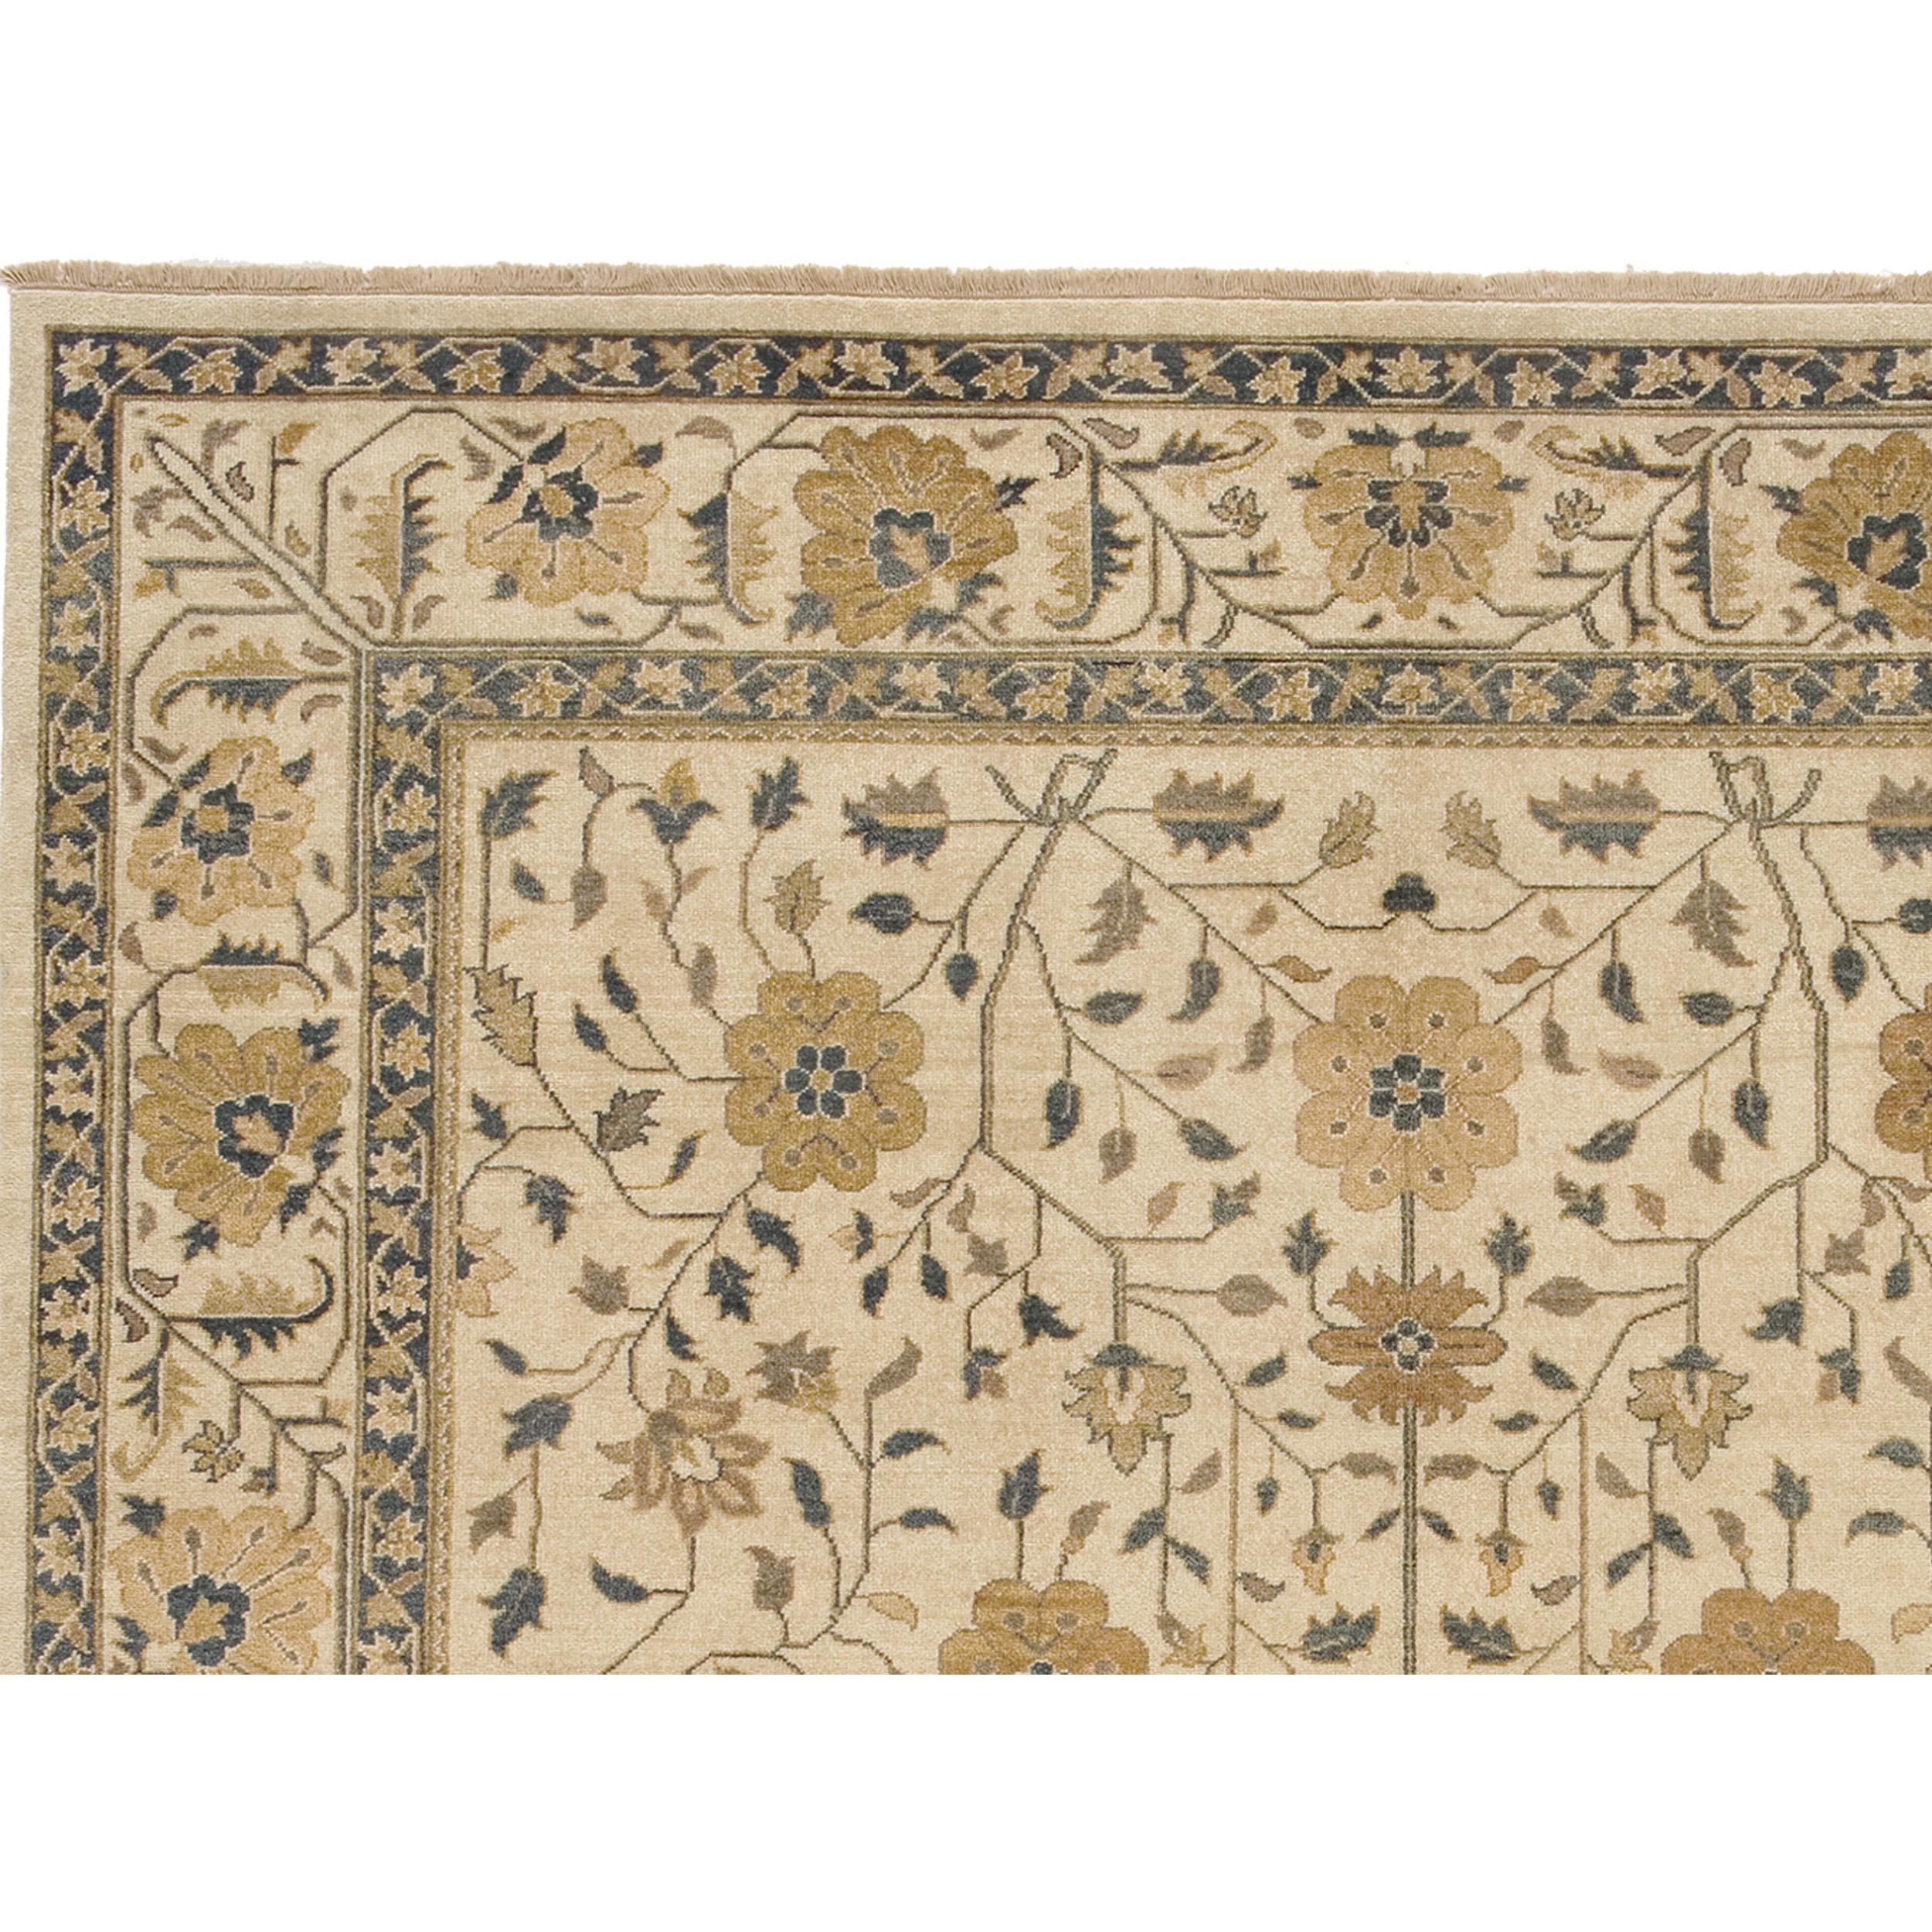 Ce luxueux tapis traditionnel noué à la main, qui a fait l'objet d'un travail méticuleux, est fabriqué à partir de la laine la plus fine. Ce tapis transcende sa fonction utilitaire et devient une œuvre d'art qui ravit les sens et s'harmonise